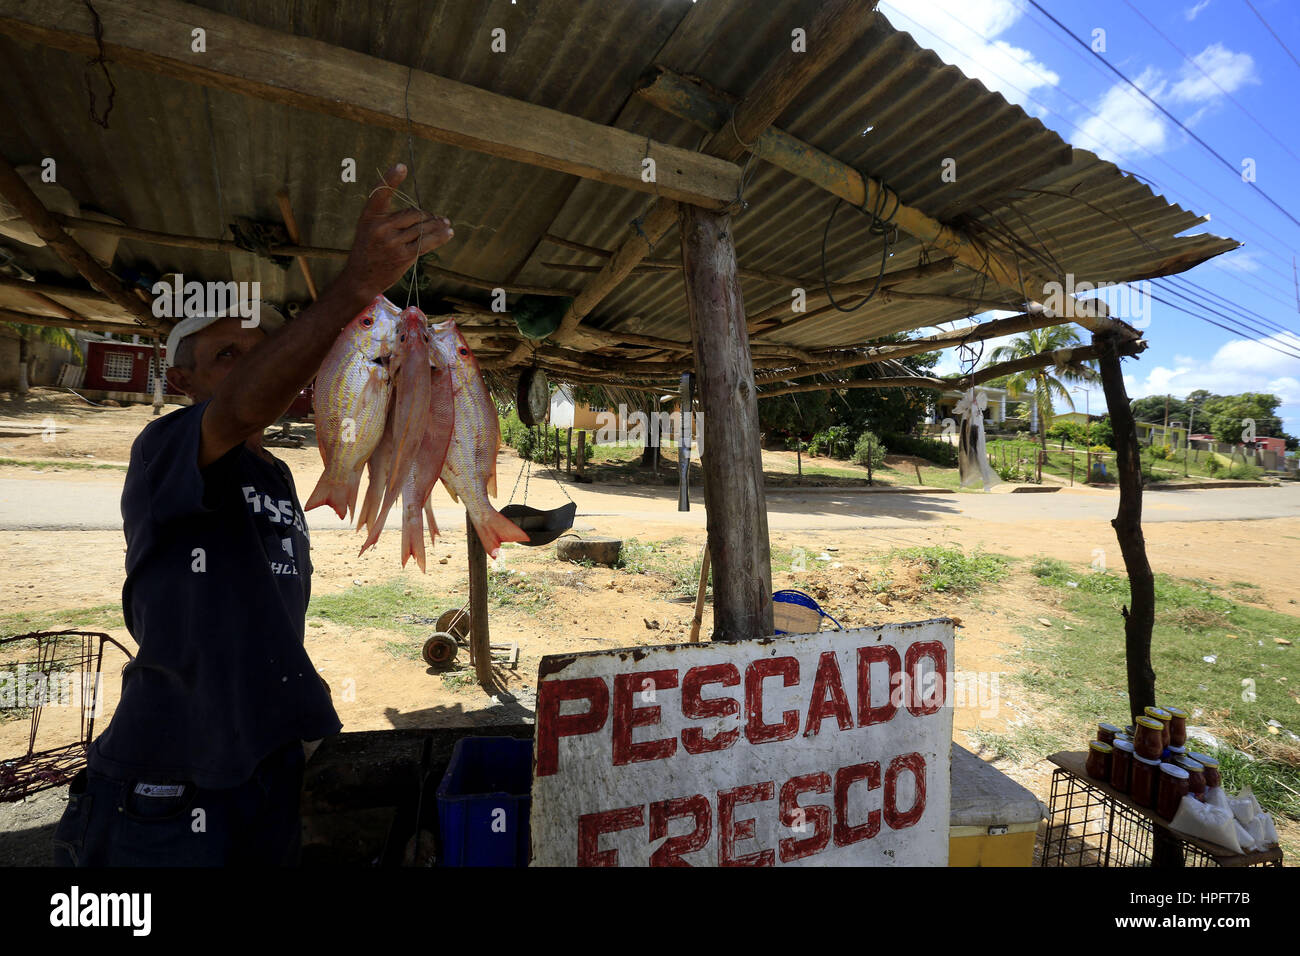 February 17, 2017 - Carretera A Santa Ana  De Coro, Falcon, Venezuela - Un hombre, vende pescados frescos al borde de la carretera que conduce desde Chichiriviche a la ciudad de Santa Ana de Coro. Foto: Juan Carlos Hernandez..------------------------------------------.A man sells fresh fish at the edge of the road leading from Chichiriviche to the town of Santa Ana de Coro. Photo: Juan Carlos Hernandez. (Credit Image: © Juan Carlos Hernandez via ZUMA Wire) Stock Photo